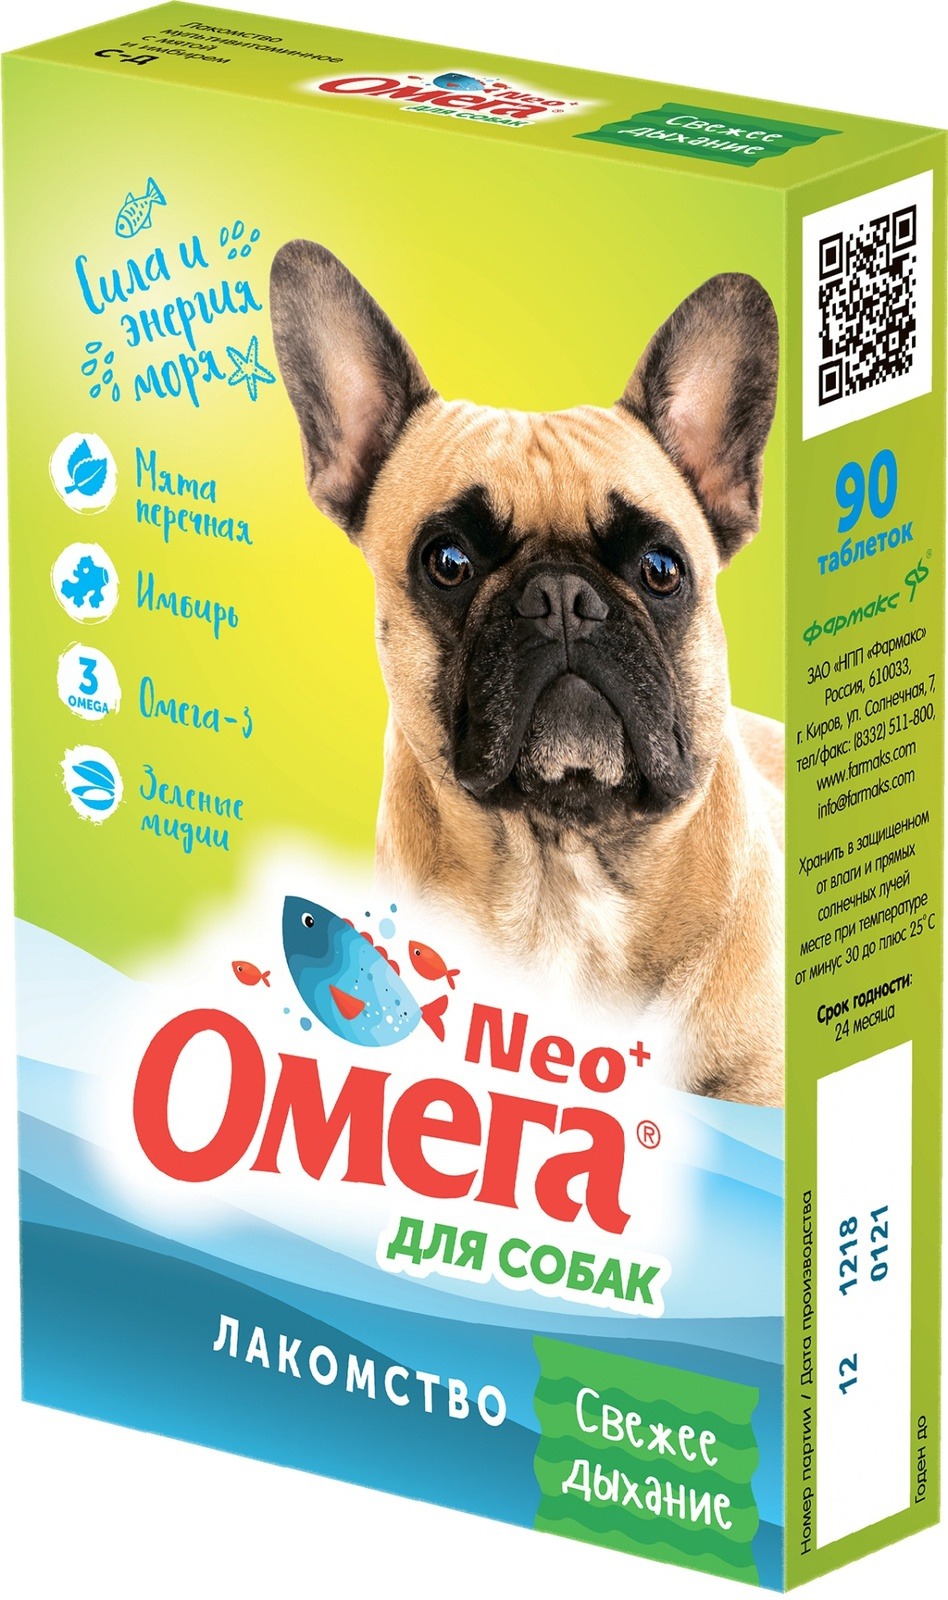 фото Витаминный комплекс для собак омега neo+, «свежее дыхание» с мятой и имбирем 90 таб, 5 шт